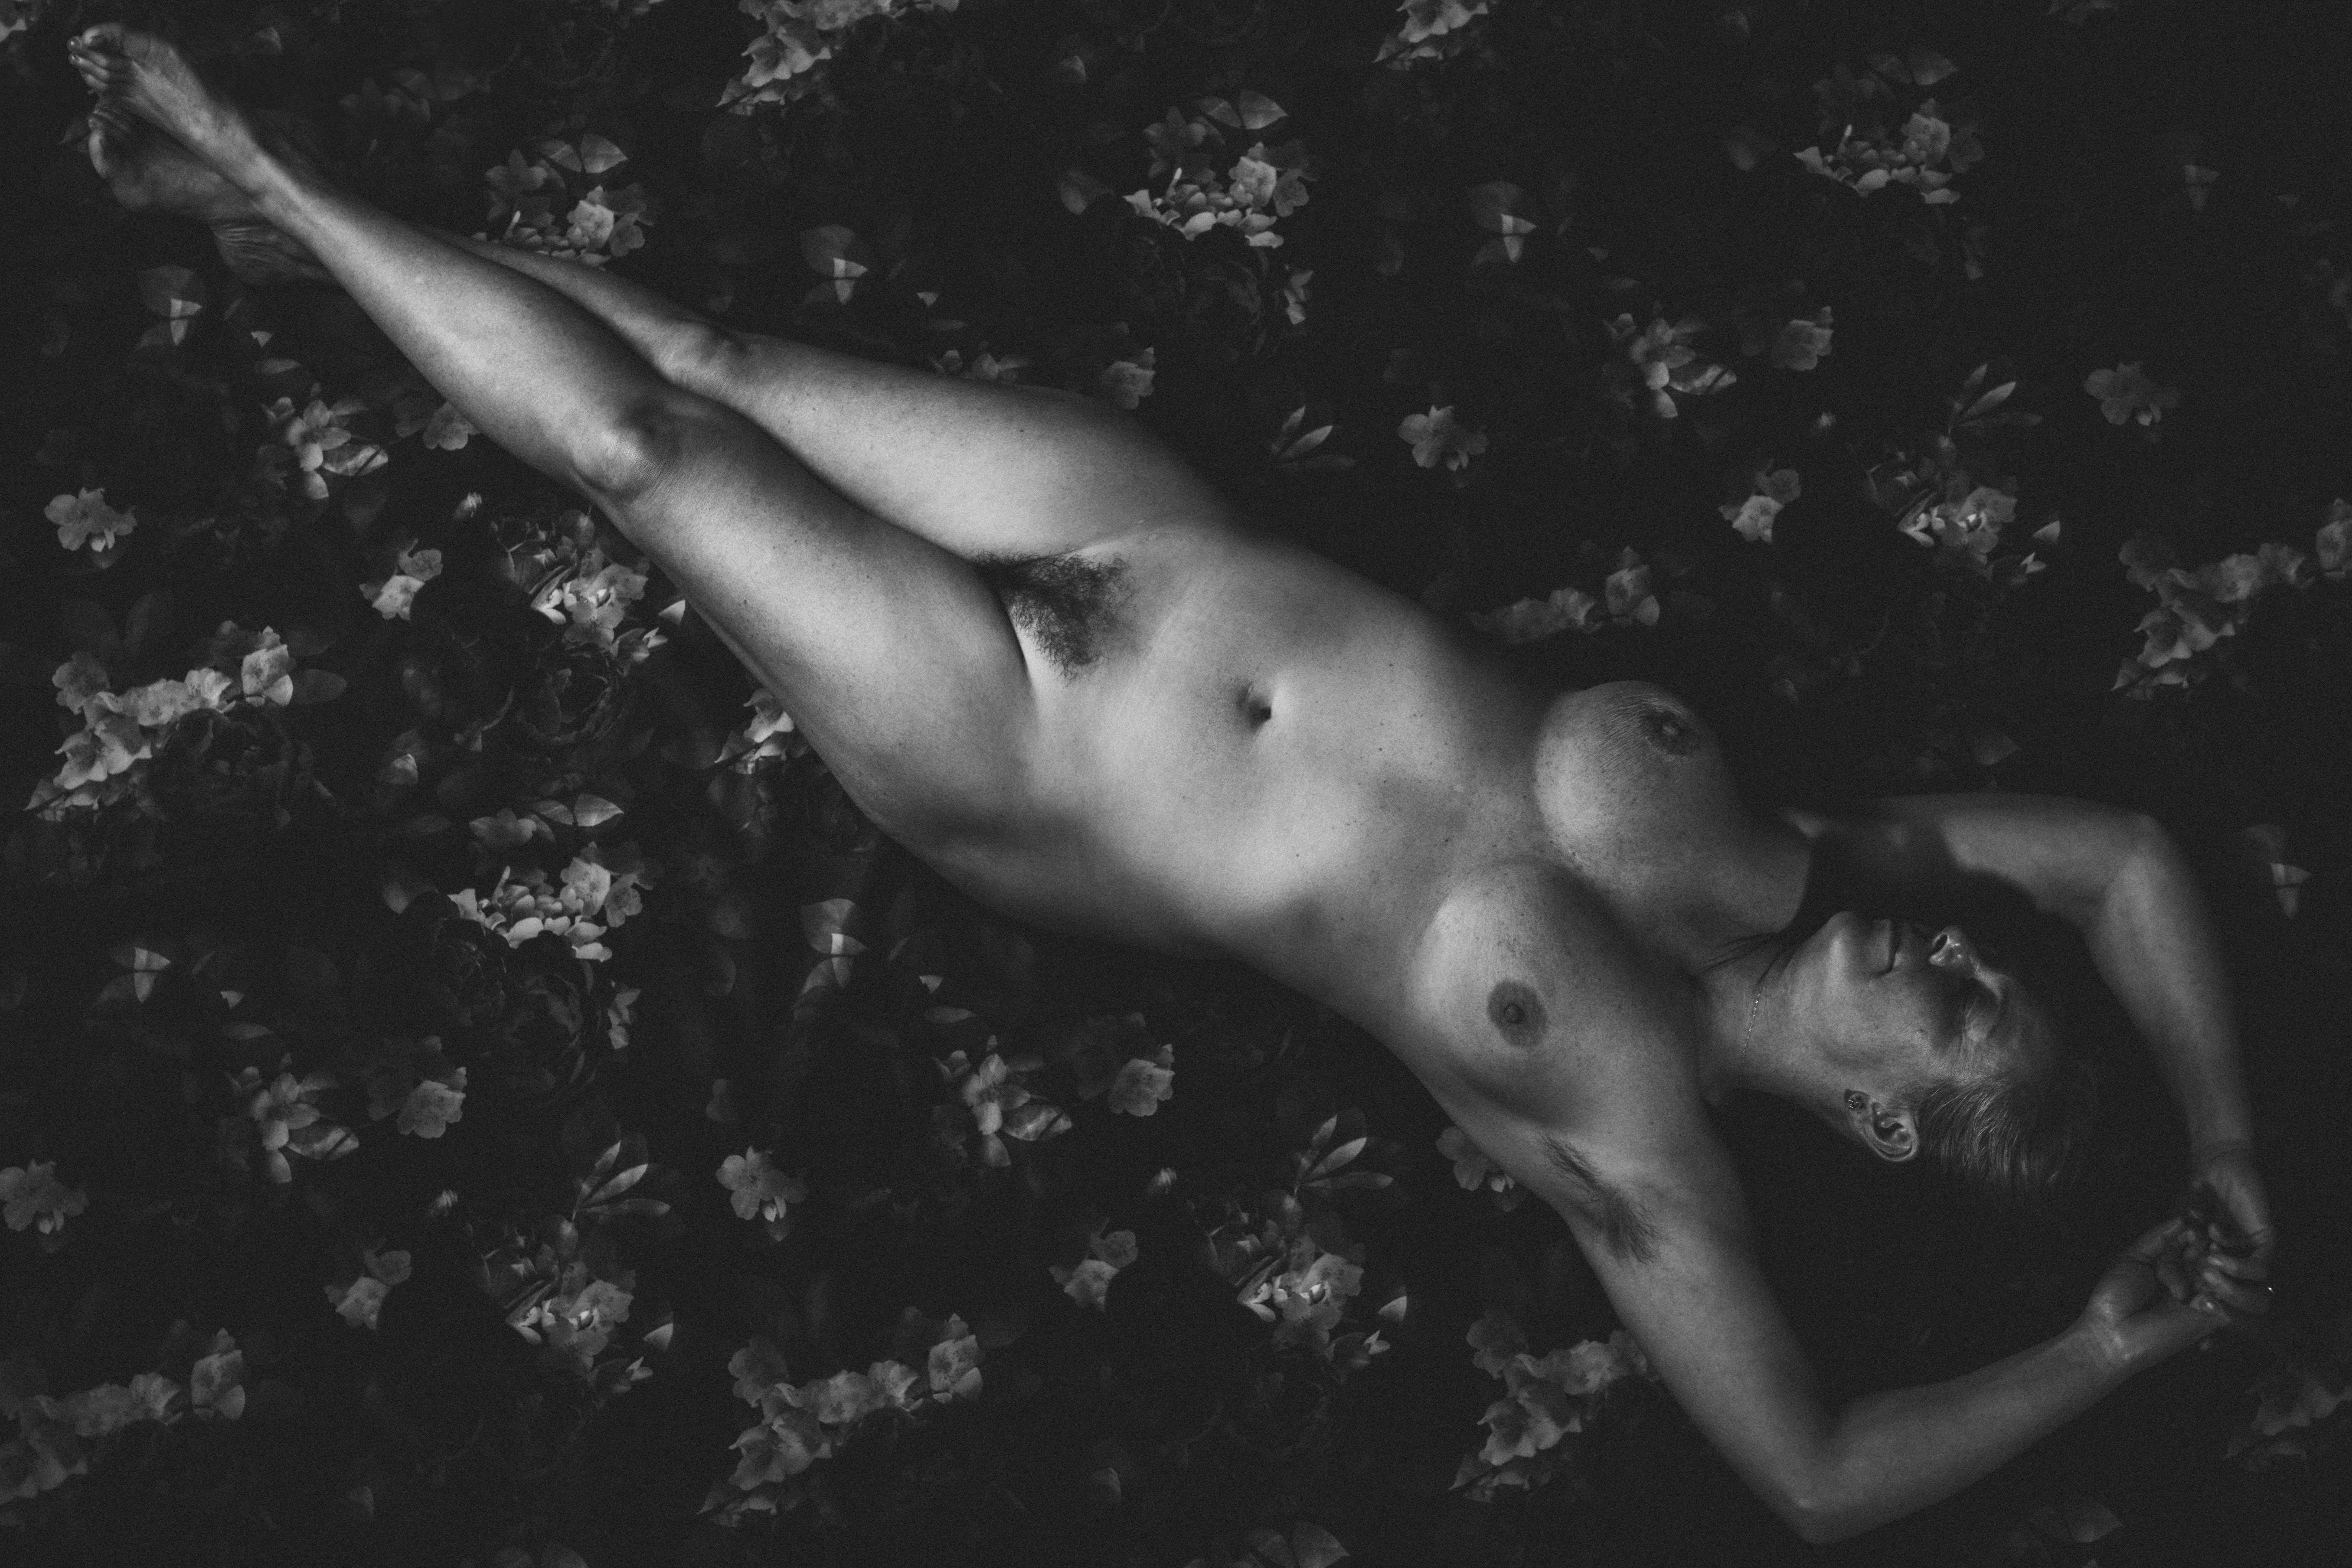 Porträt einer nackten Frau, bildende Kunst, Aktfotografie, limitierte Auflage 2/3 (Schwarz), Black and White Photograph, von Laurentina Miksys